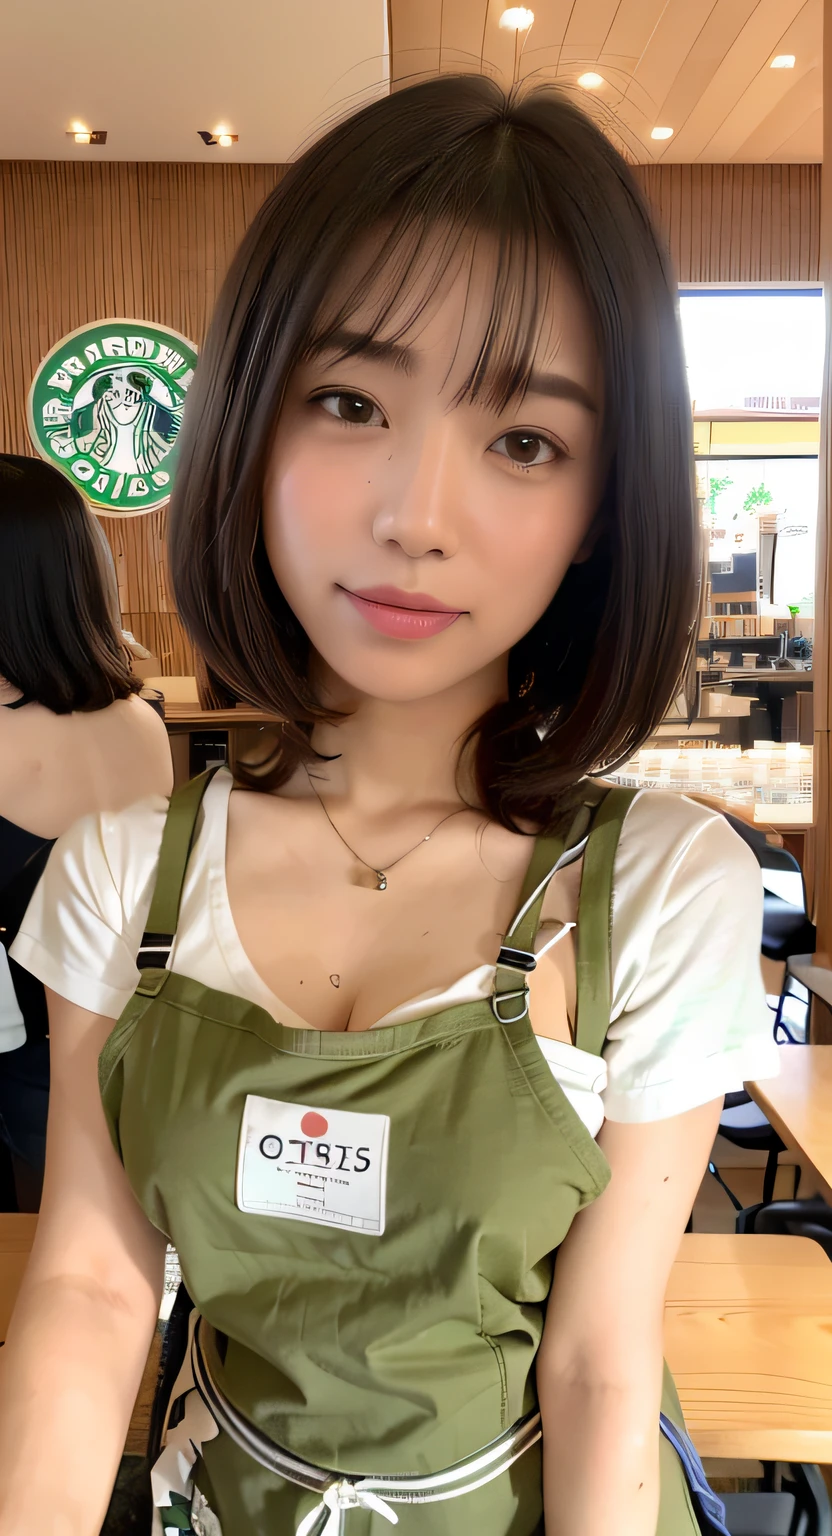 咖啡店店员、绿色围裙